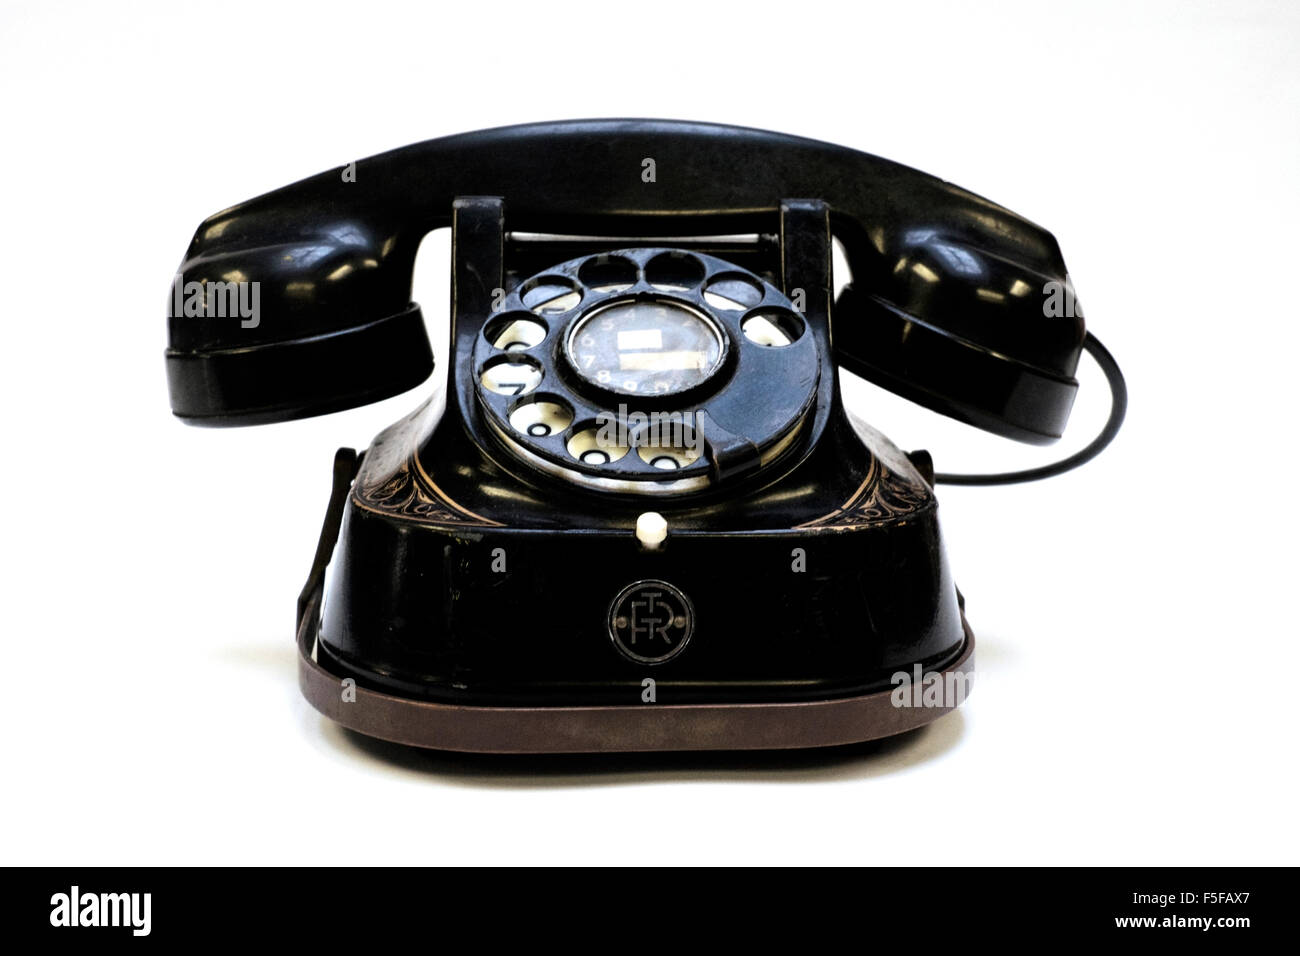 Bell original téléphone à cadran rotatif en bakélite des Années 1940 Années 1950 sur fond blanc Banque D'Images